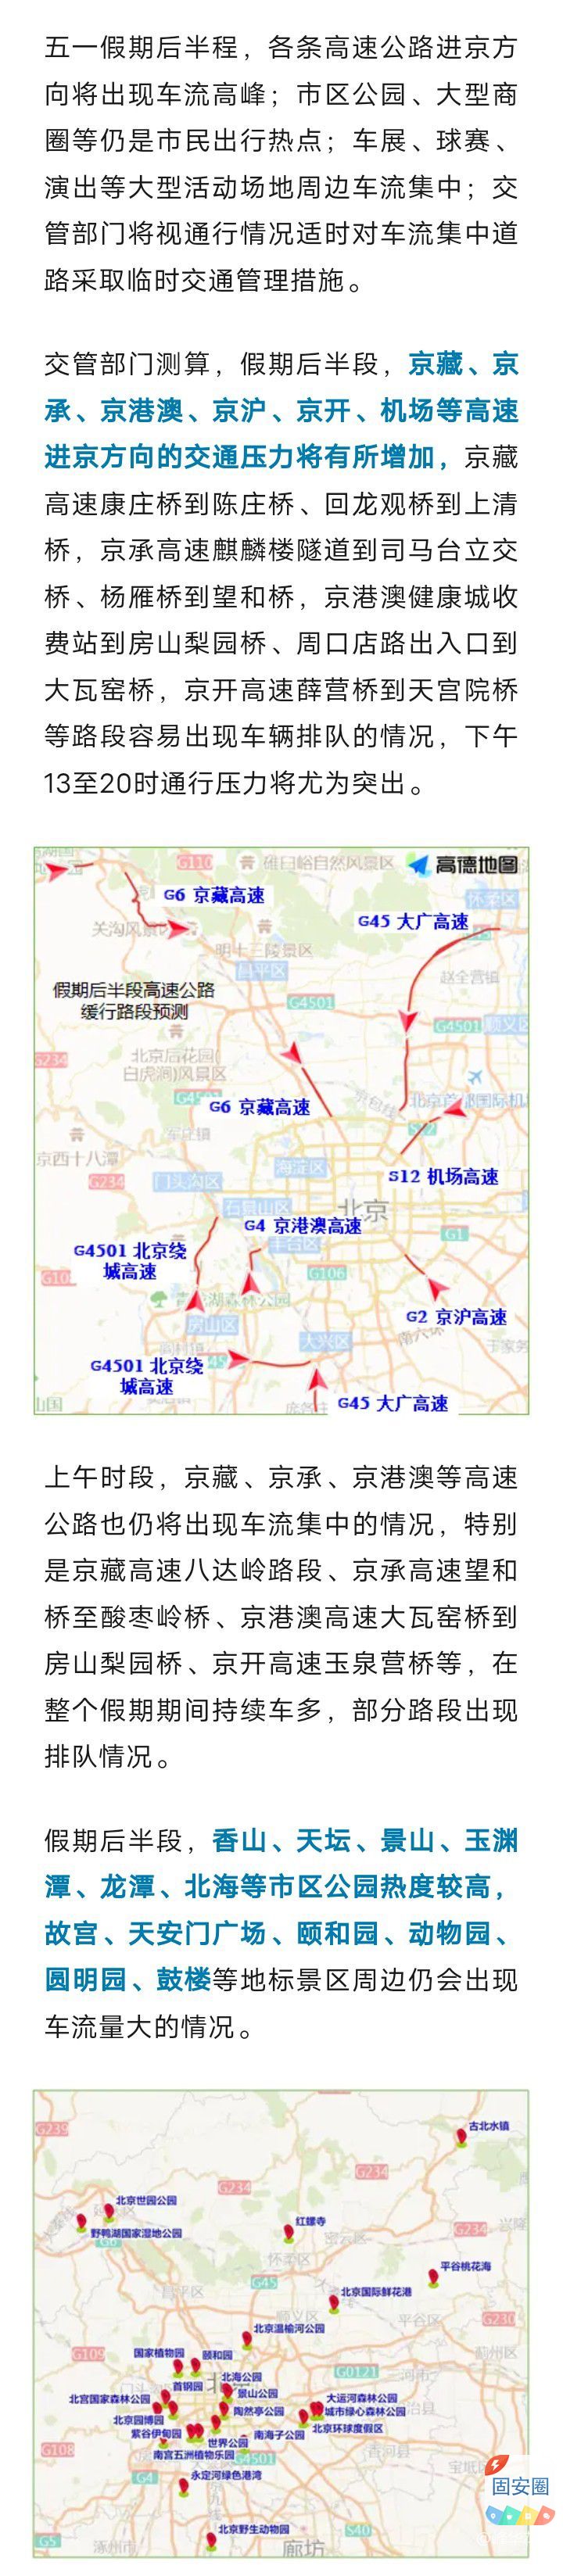 五一，后半程高速进京方向流量增大，城区公园商圈保持高热度6891 作者:峰华花园 帖子ID:306686 